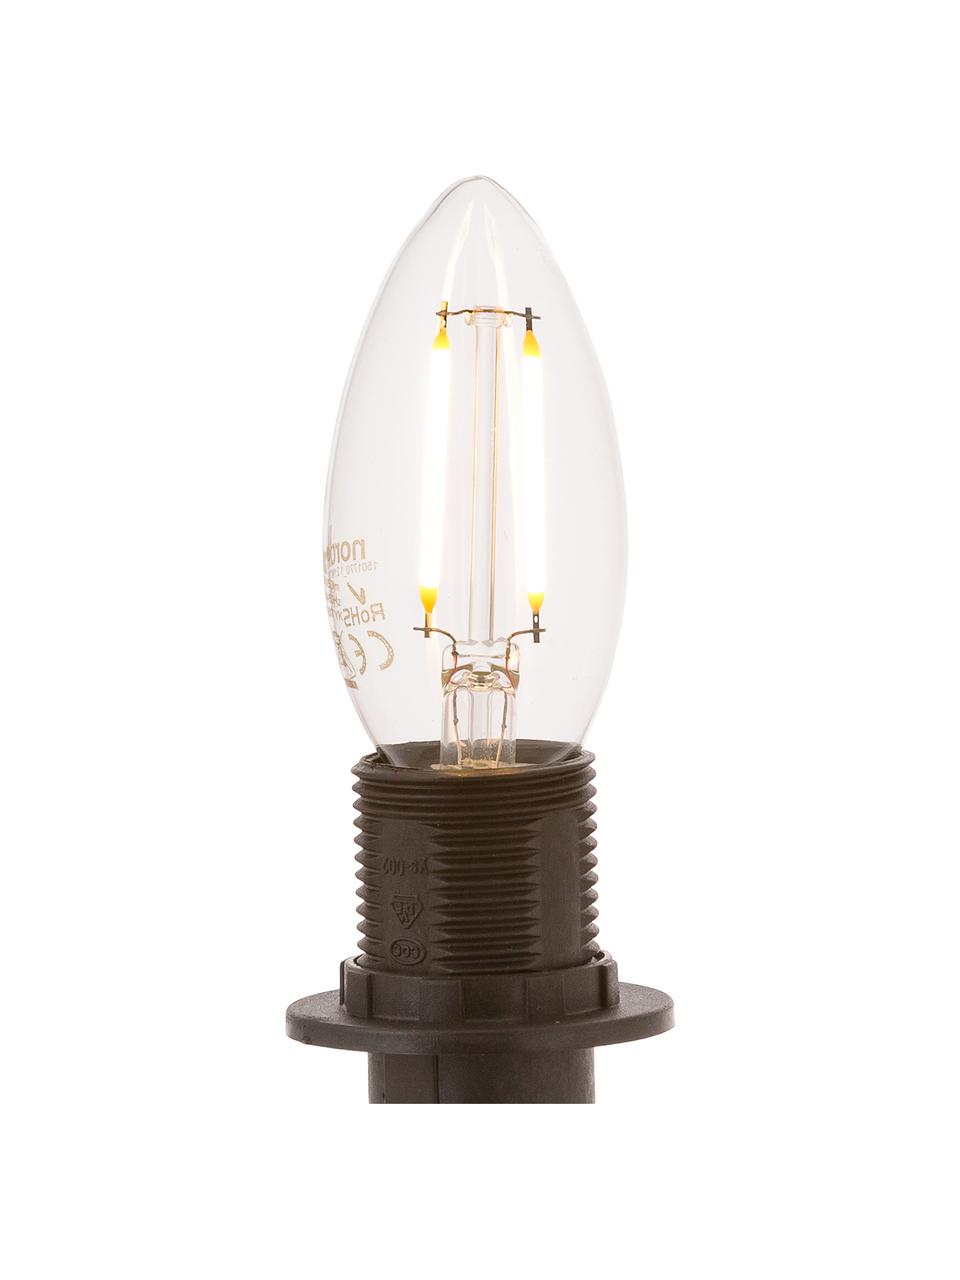 E14 Leuchtmittel, 250lm, warmweiss, 5 Stück, Leuchtmittelschirm: Glas, Leuchtmittelfassung: Aluminium, Transparent, Ø 4 x H 10 cm